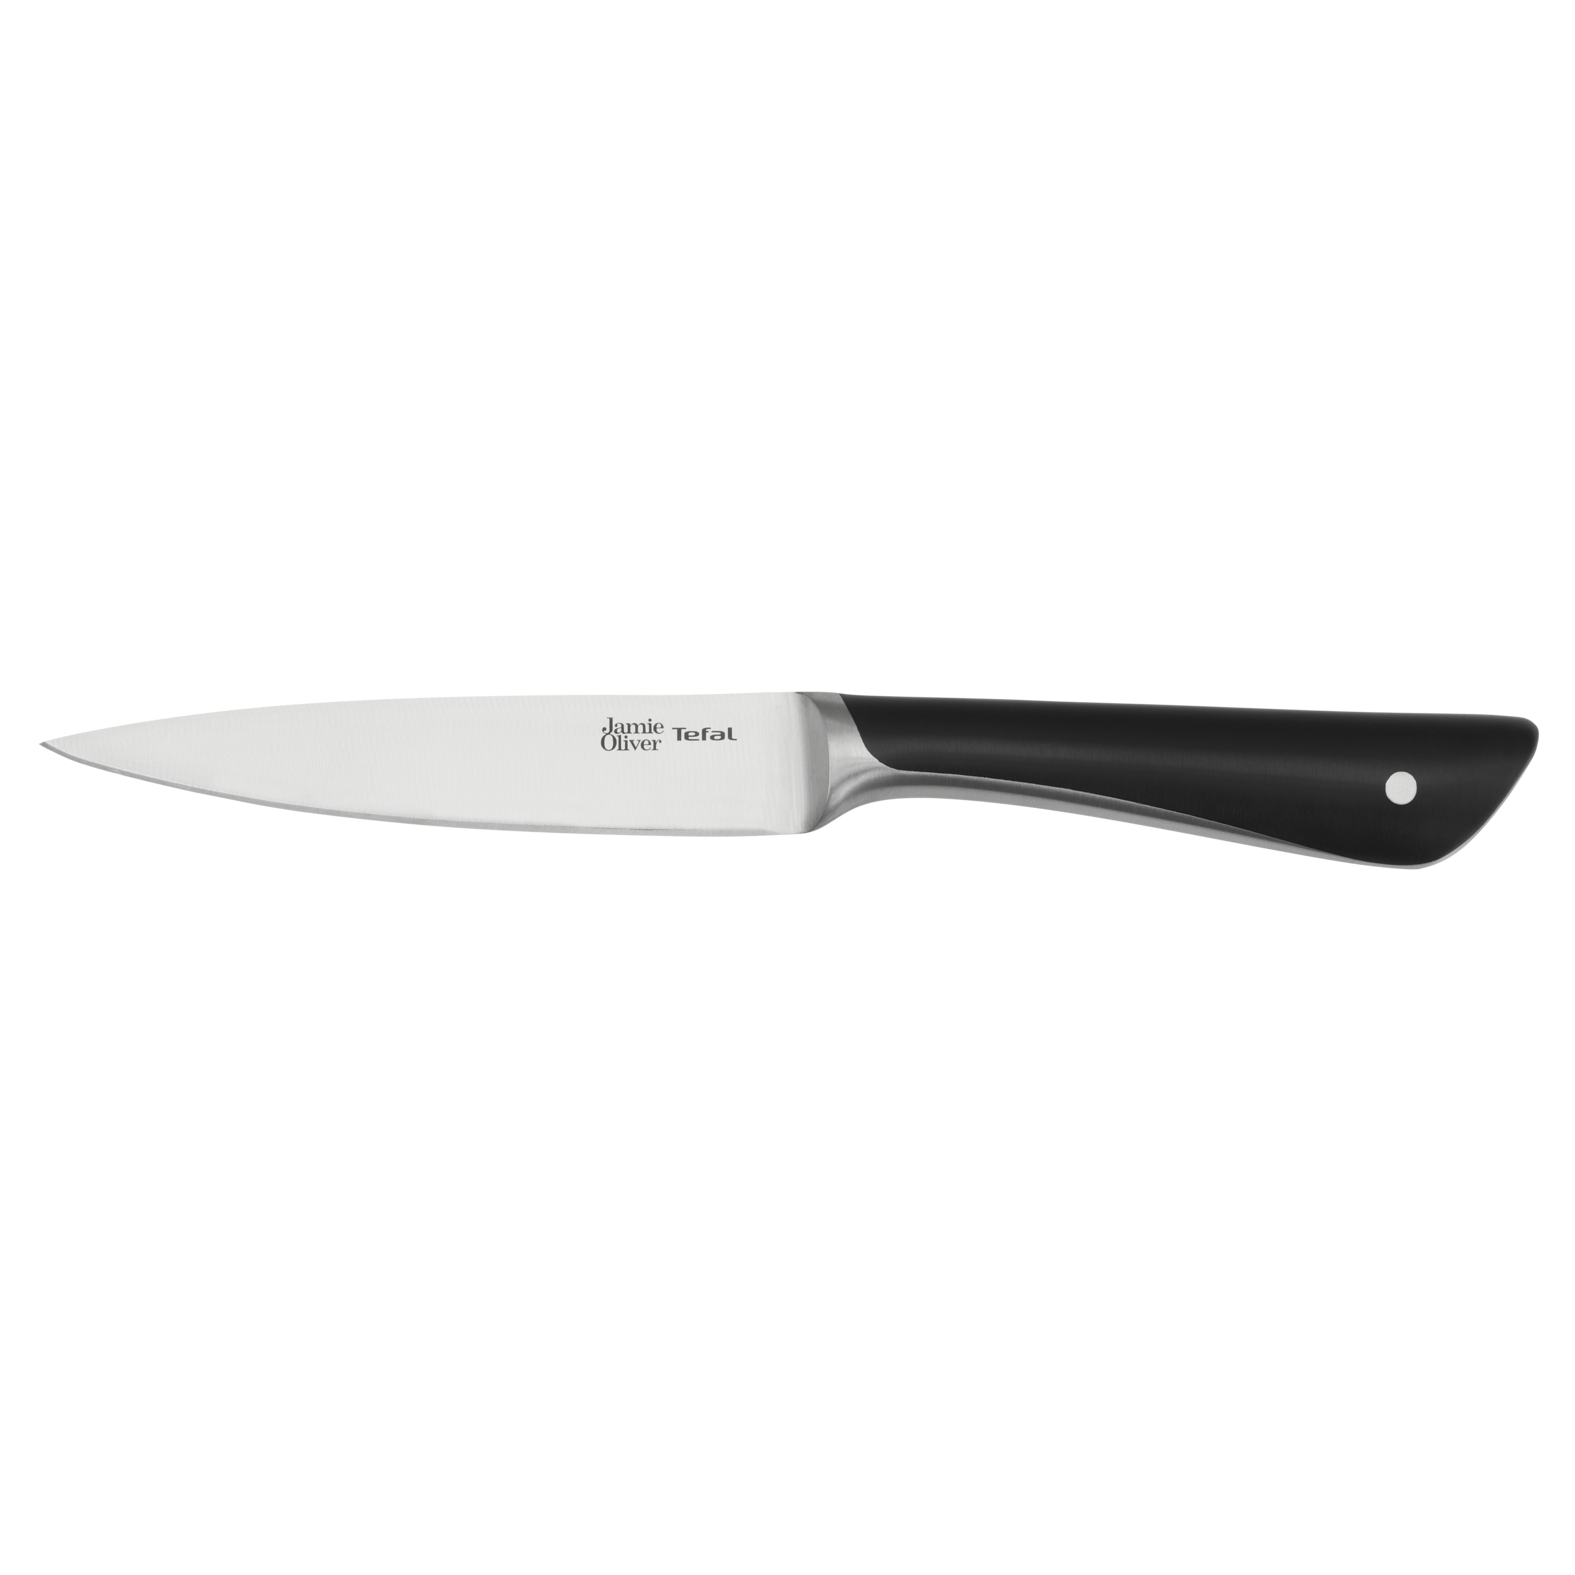 Универсальный нож Jamie Oliver K2670955 12 см, цвет серебристый/черный